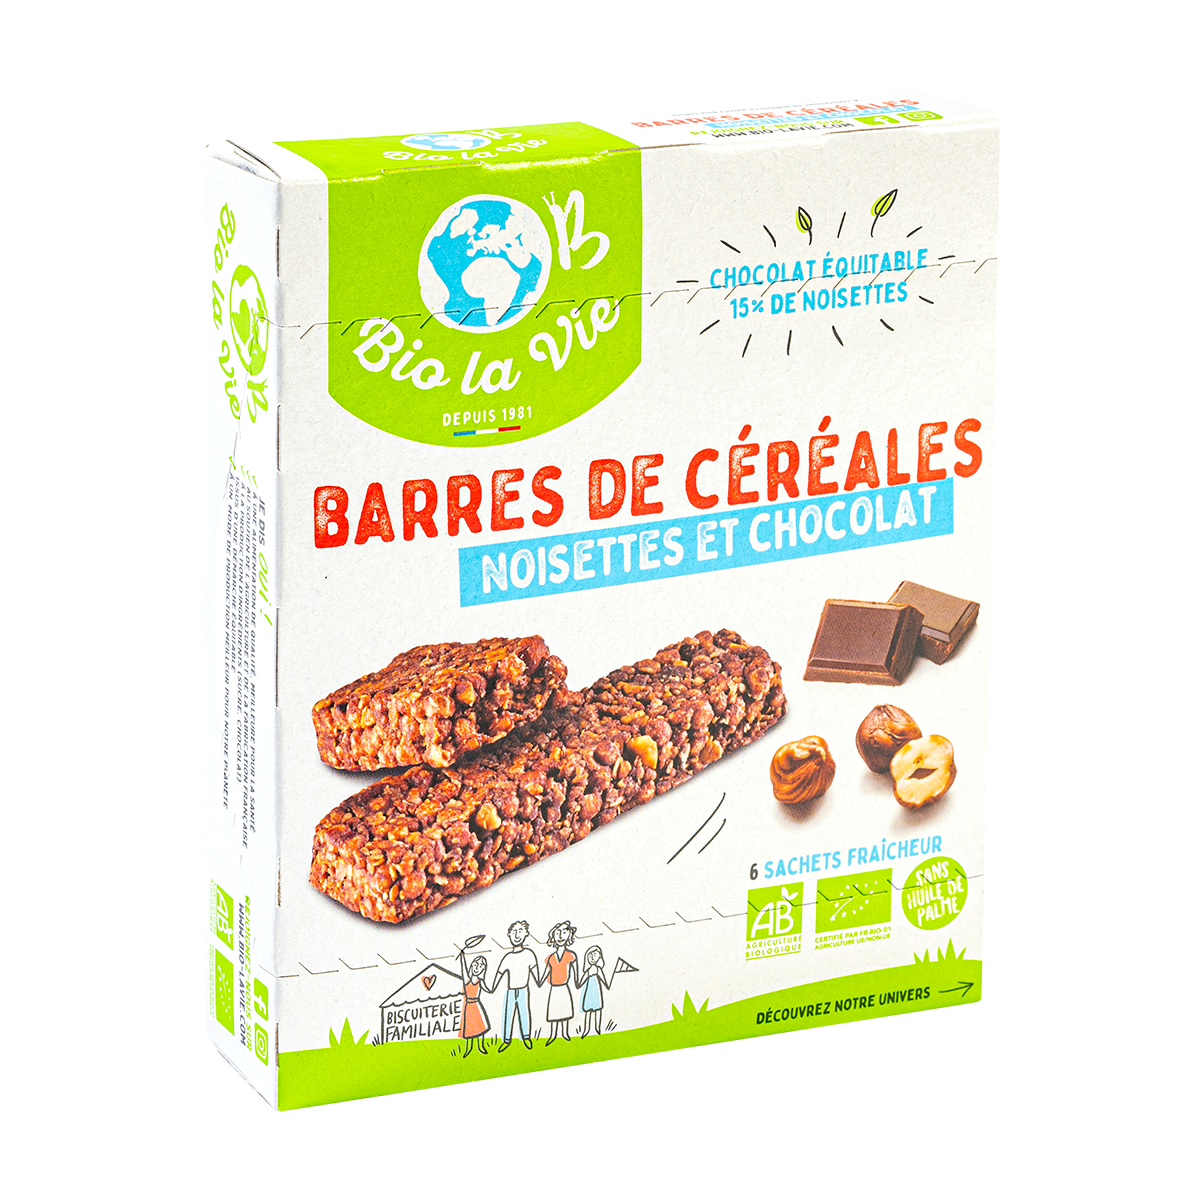 Barres de cereales noisettes et chocolat - Bio la vie